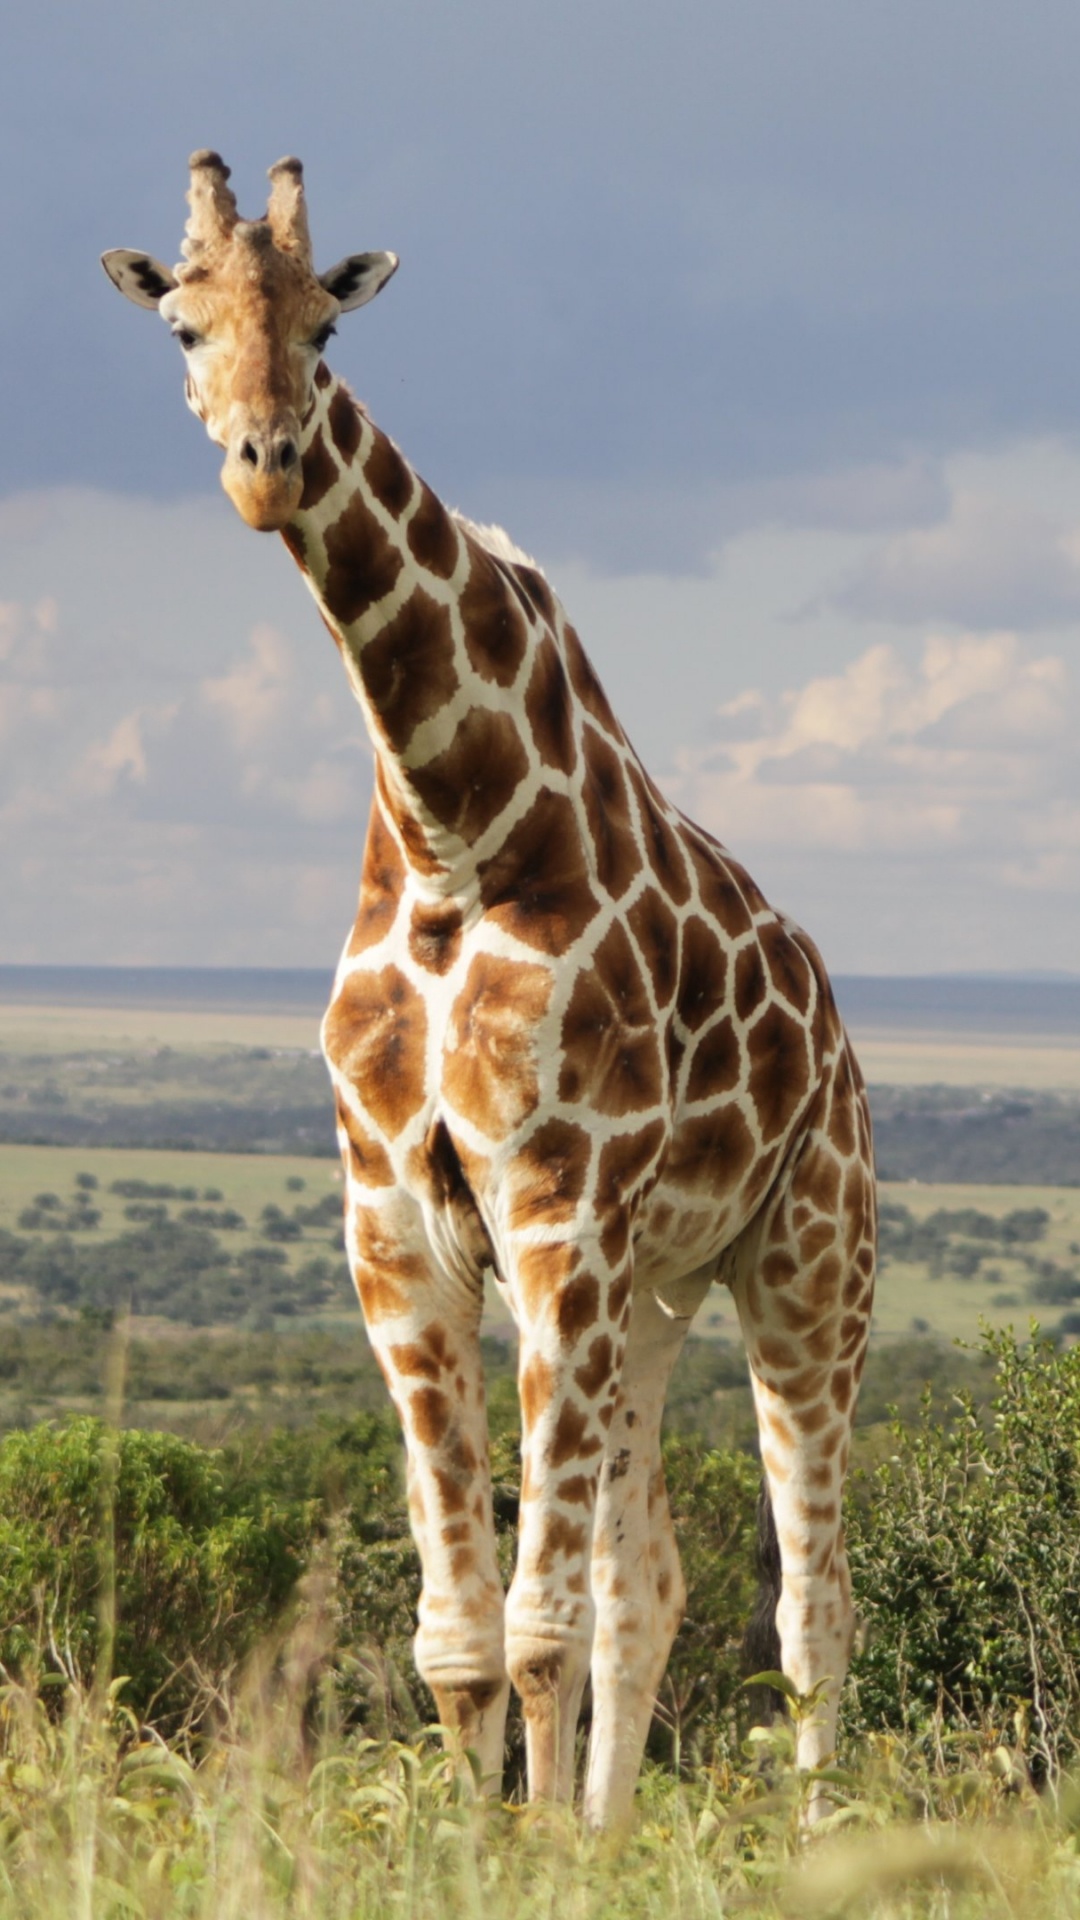 Giraffe, Die Tagsüber Auf Der Grünen Wiese Steht. Wallpaper in 1080x1920 Resolution